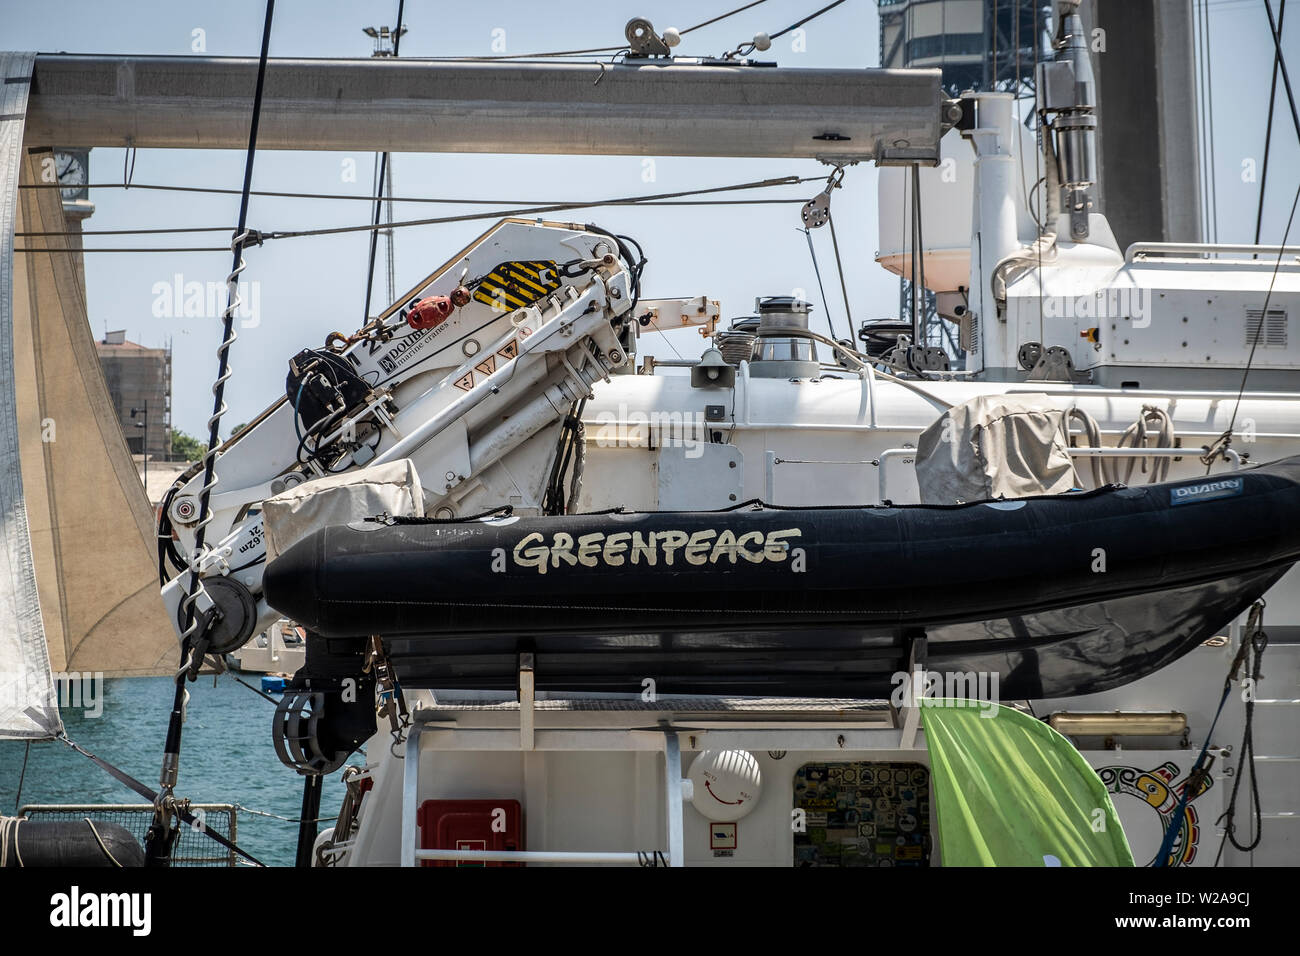 Die Greenpeace Logo befindet sich auf einem rettungsboot gesehen. Das flaggschiff Rainbow Warrior von Greenpeace in Spanien kommt gegen die Klimakrise zu bekämpfen. Das Segelboot wird in den Häfen von Barcelona, Malaga und Vigo stop dringende Maßnahmen gegen die Klimakrise zu verlangen. Stockfoto